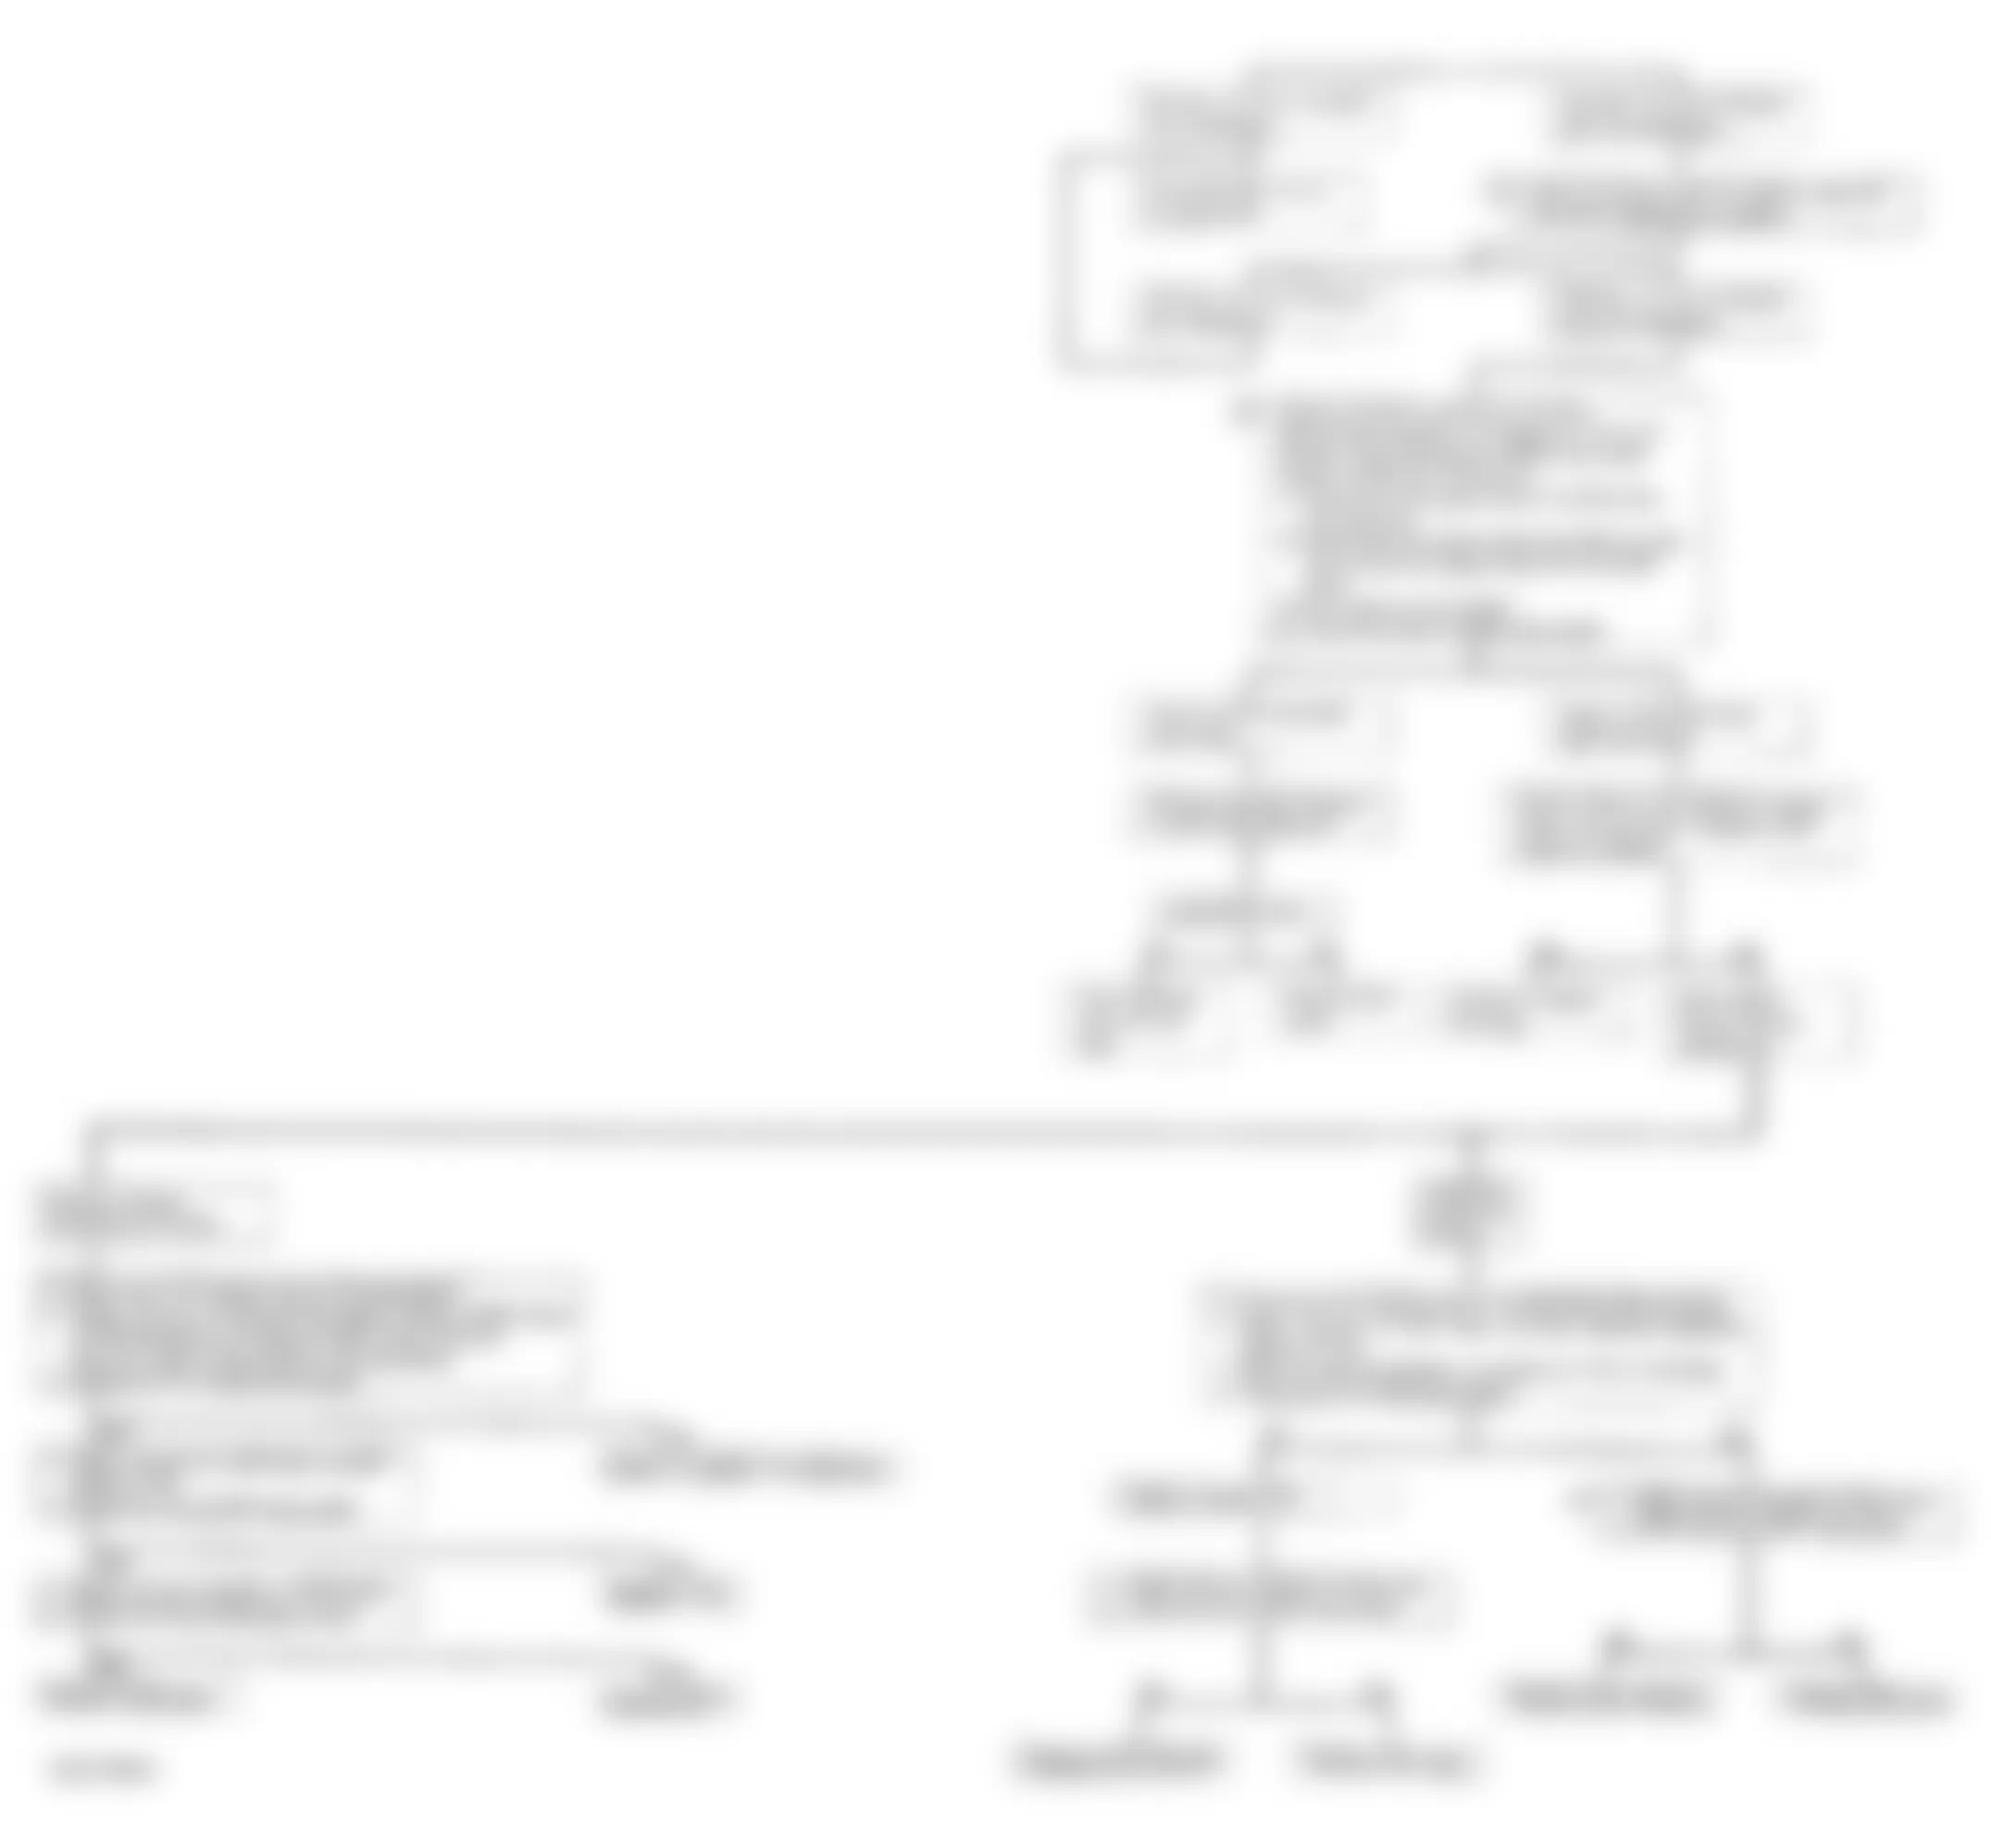 Isuzu Rodeo LS 1994 - Component Locations -  Code 32 - Diagnostic Flowchart (3 Of 3)